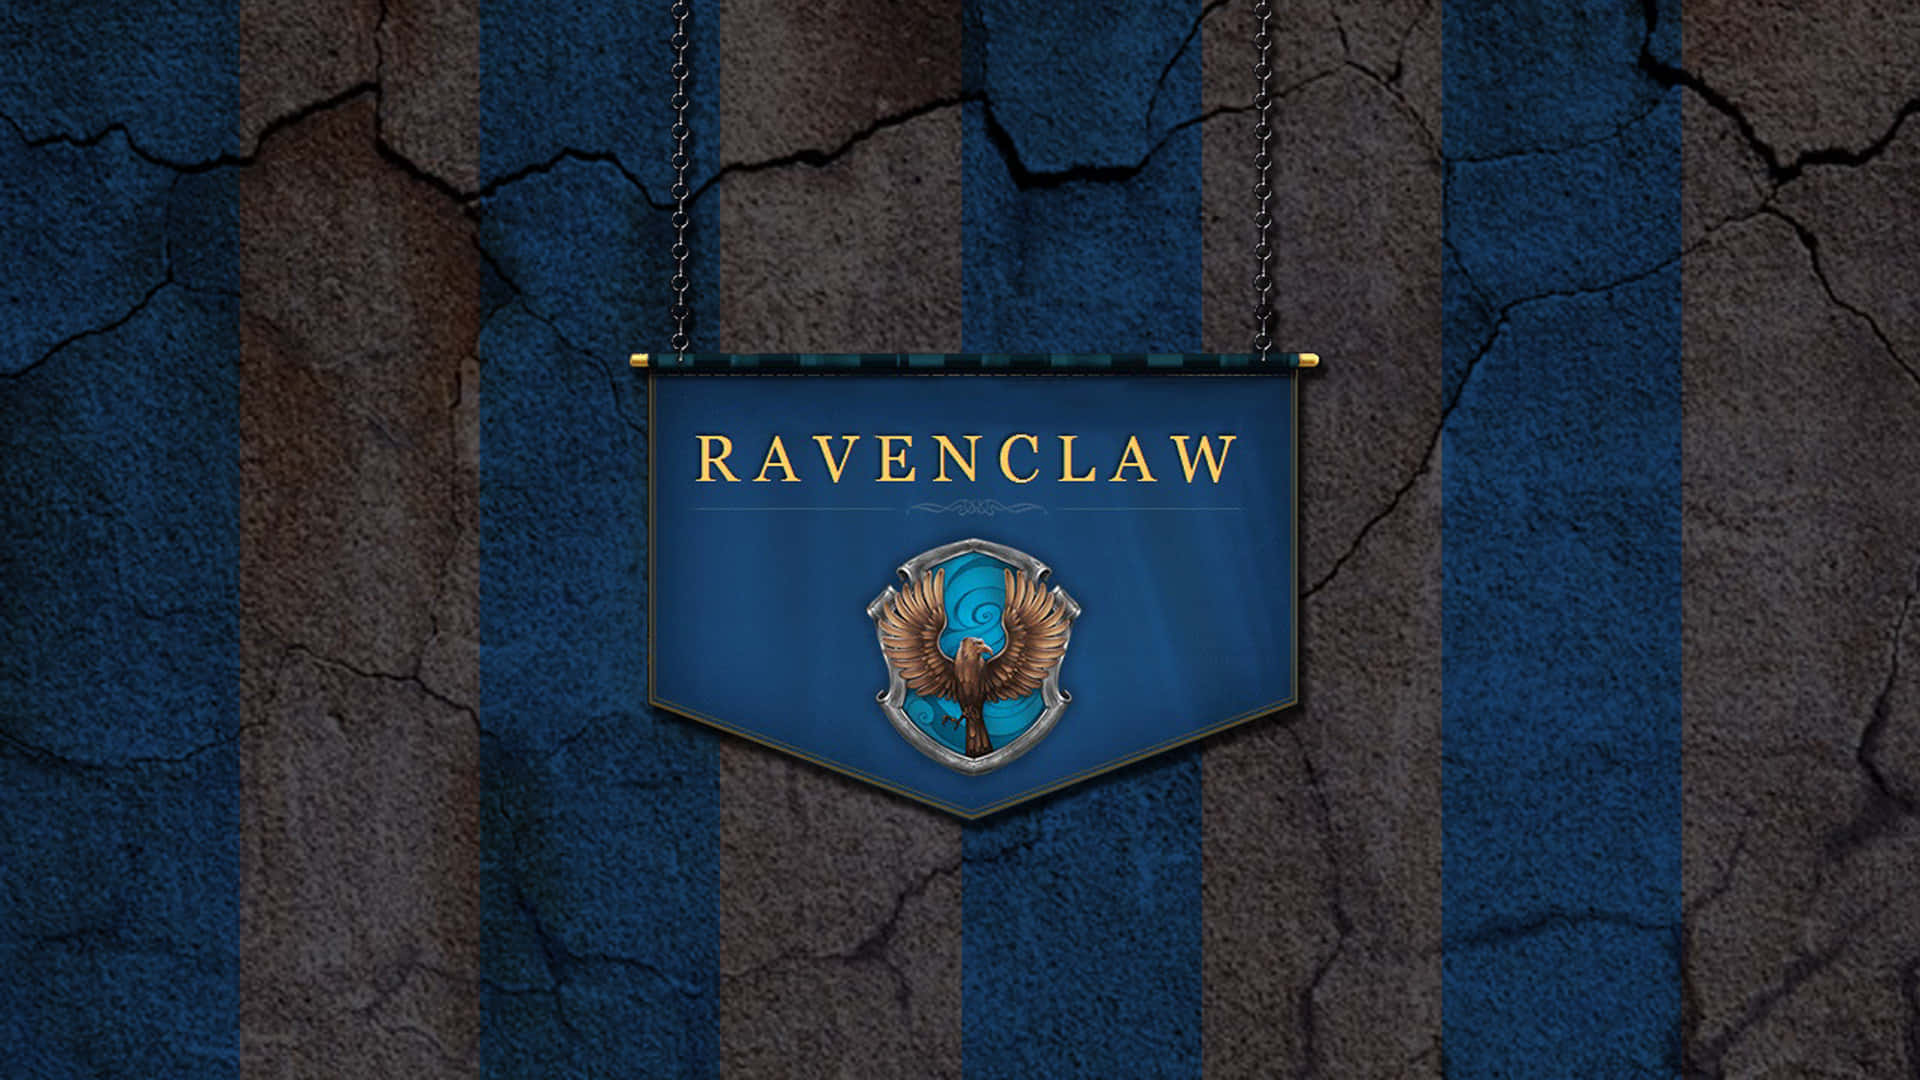 Ravenclawbanner På En Blå Vägg